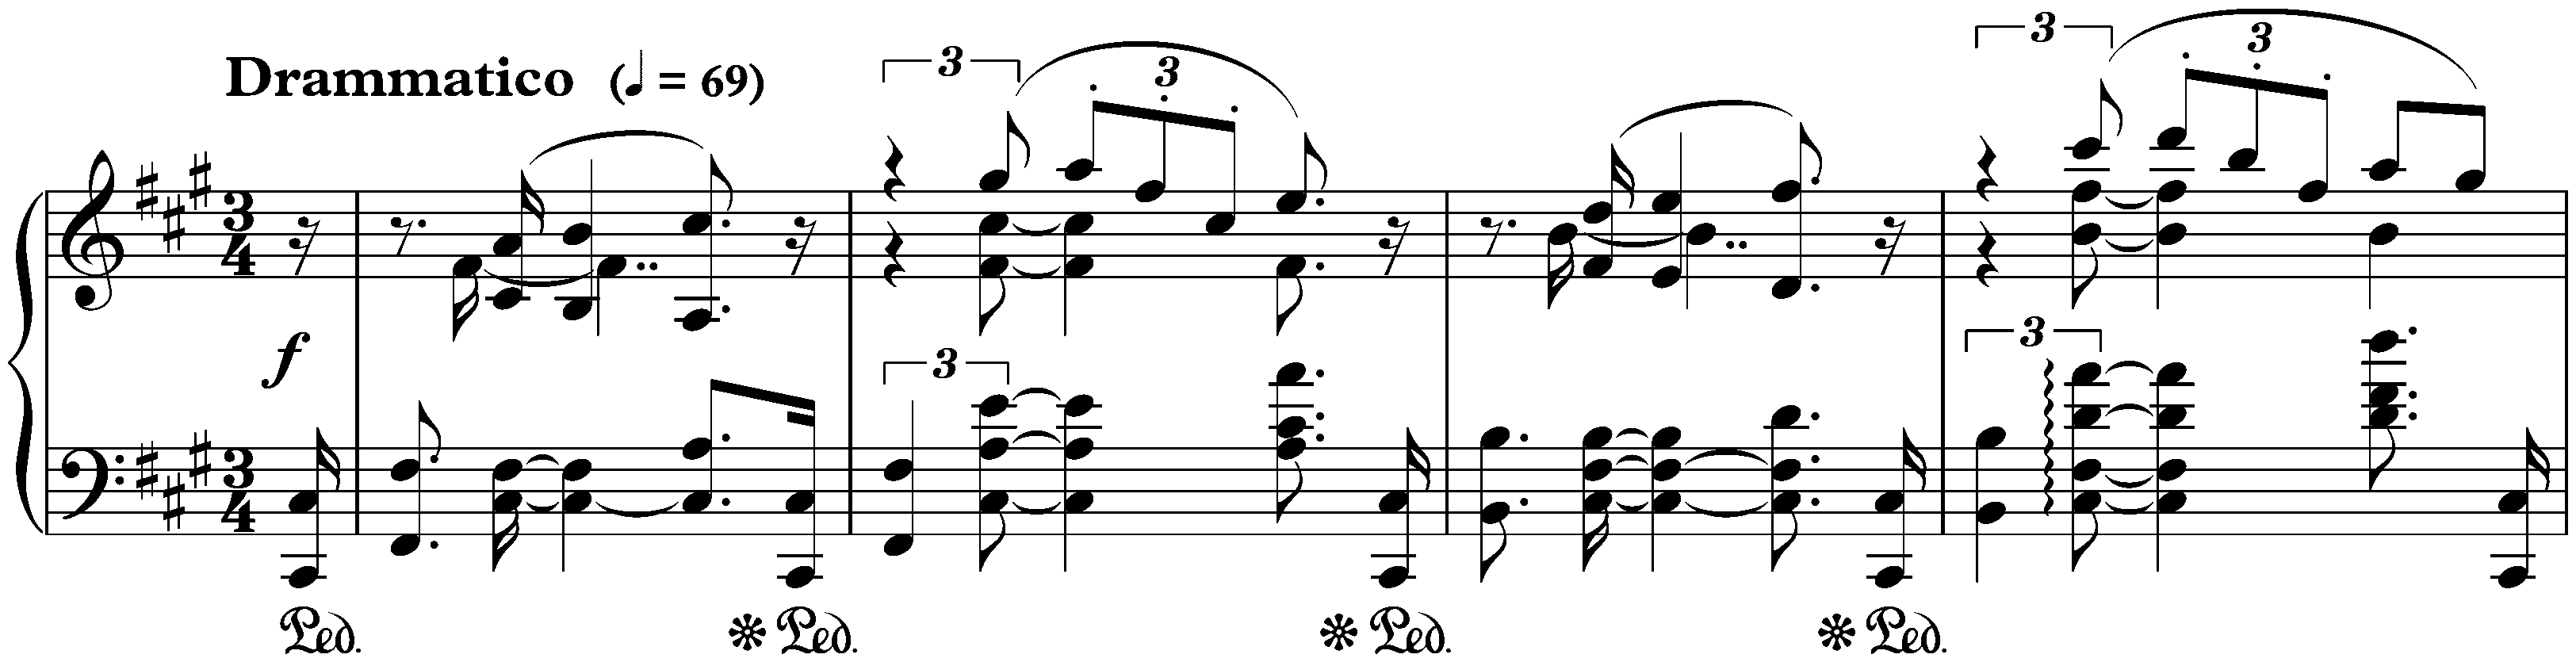 Sonata no. 3 in F-sharp minor, op. 23; 1. Drammatico